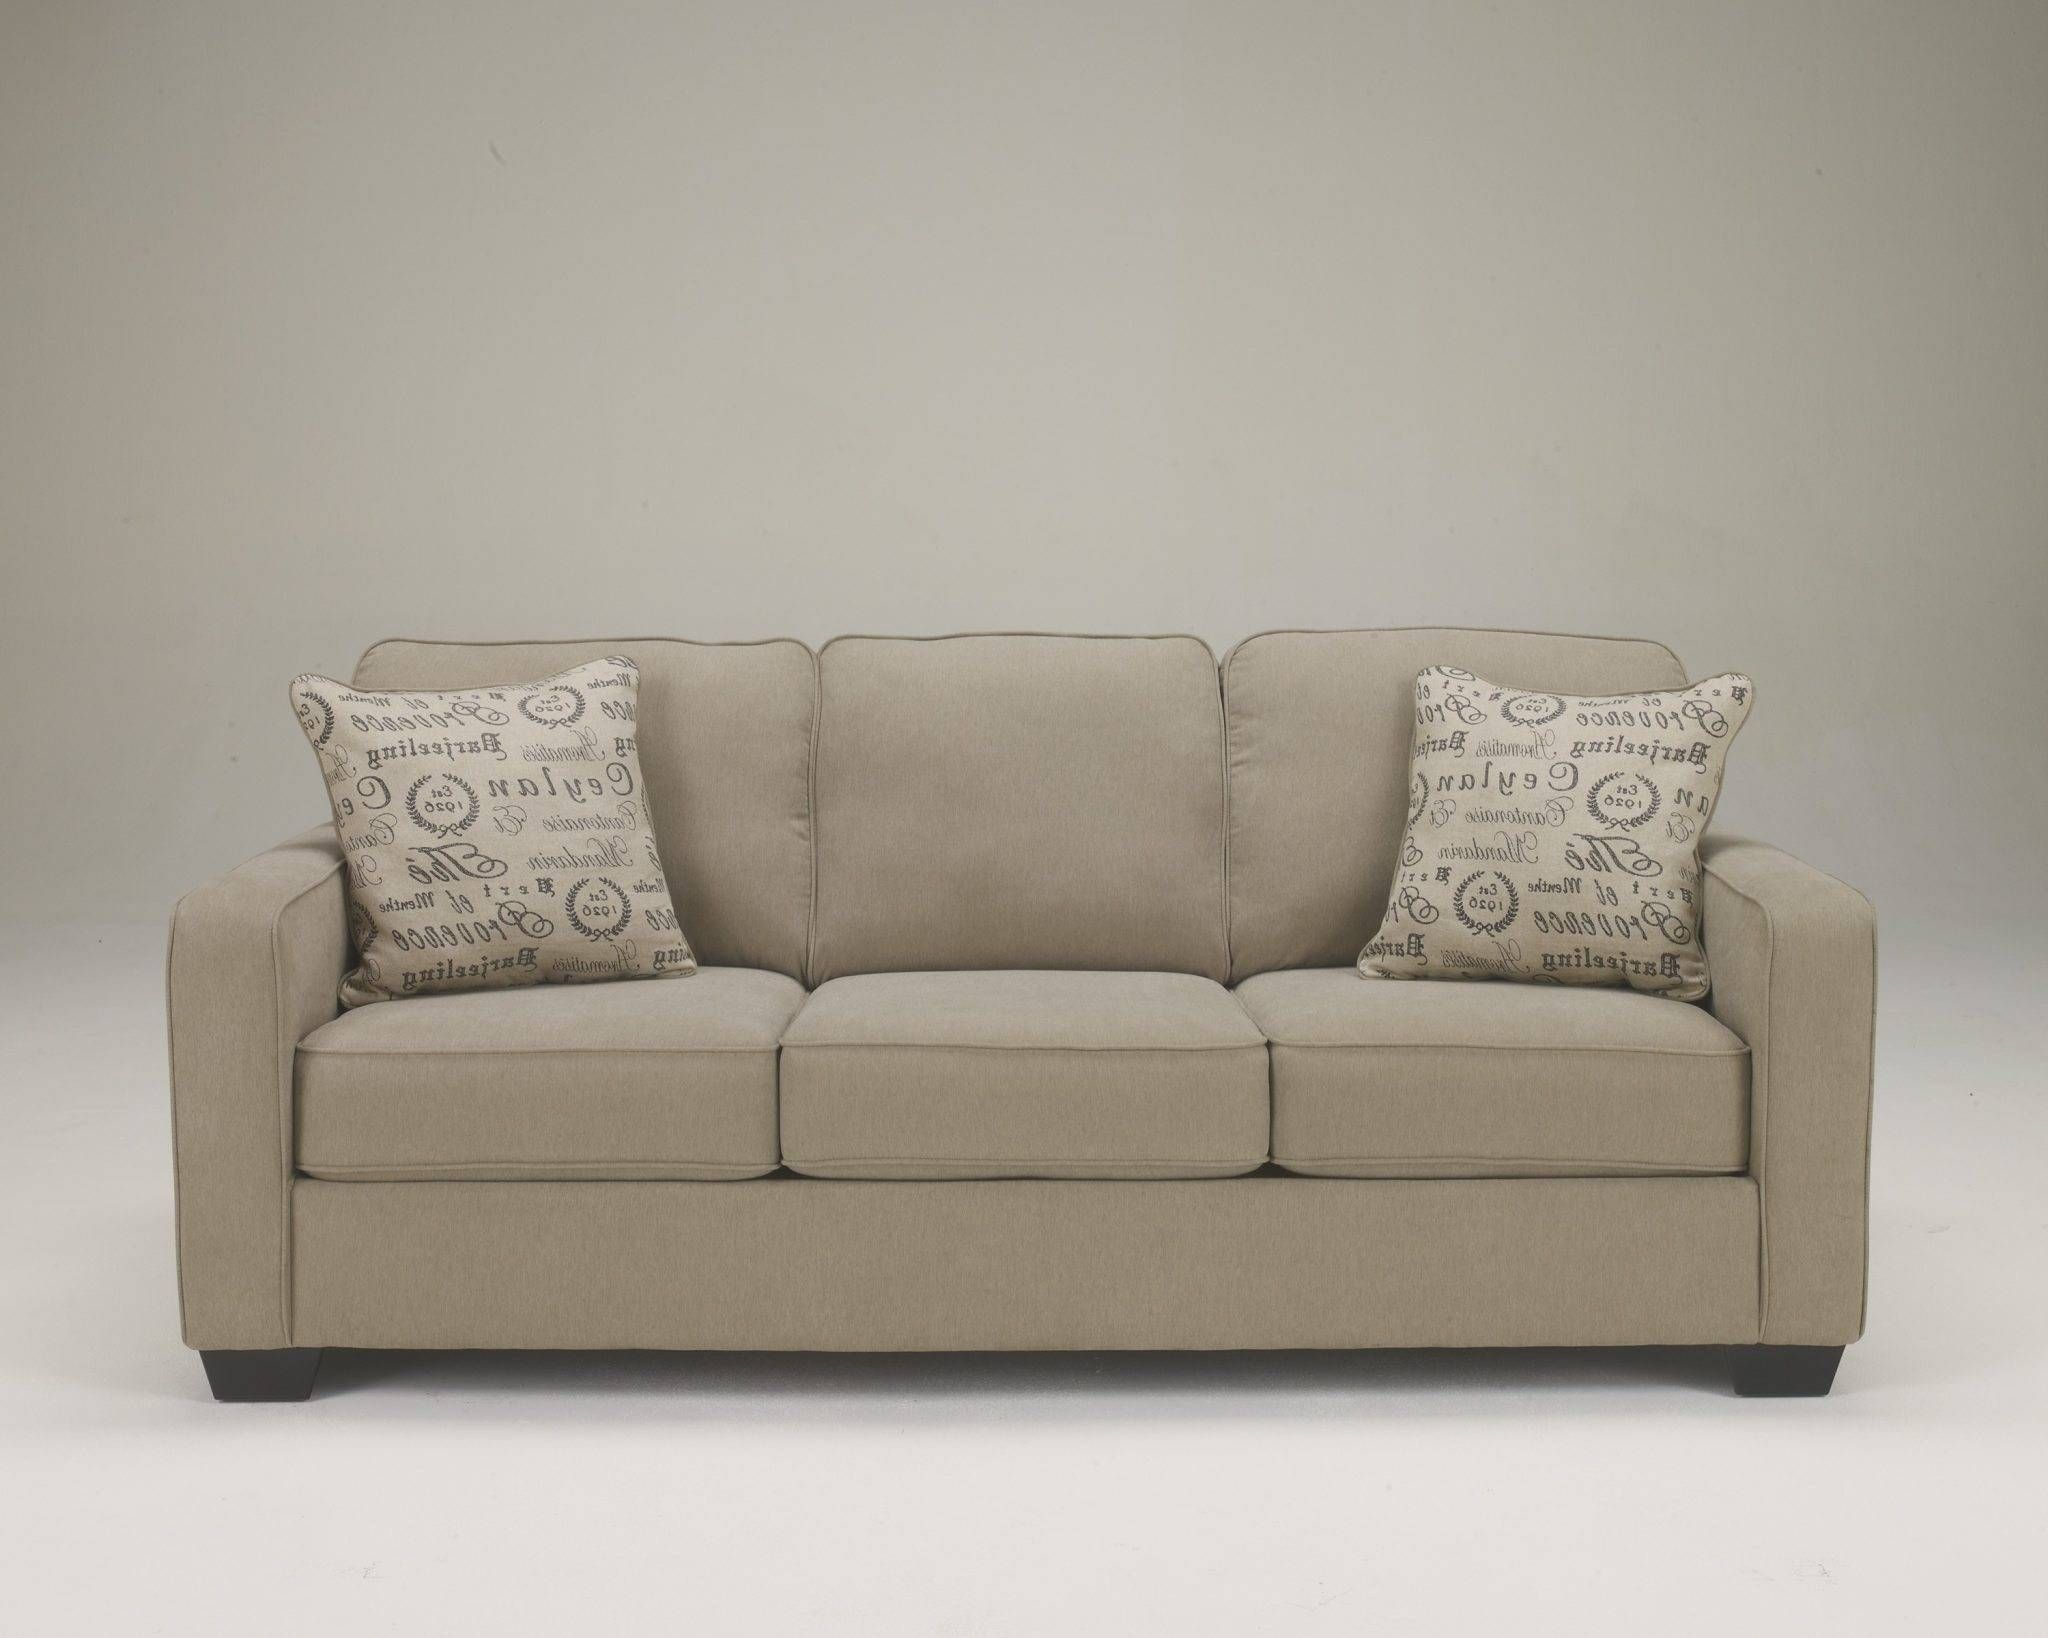 Sears Furniture Leather Sofa